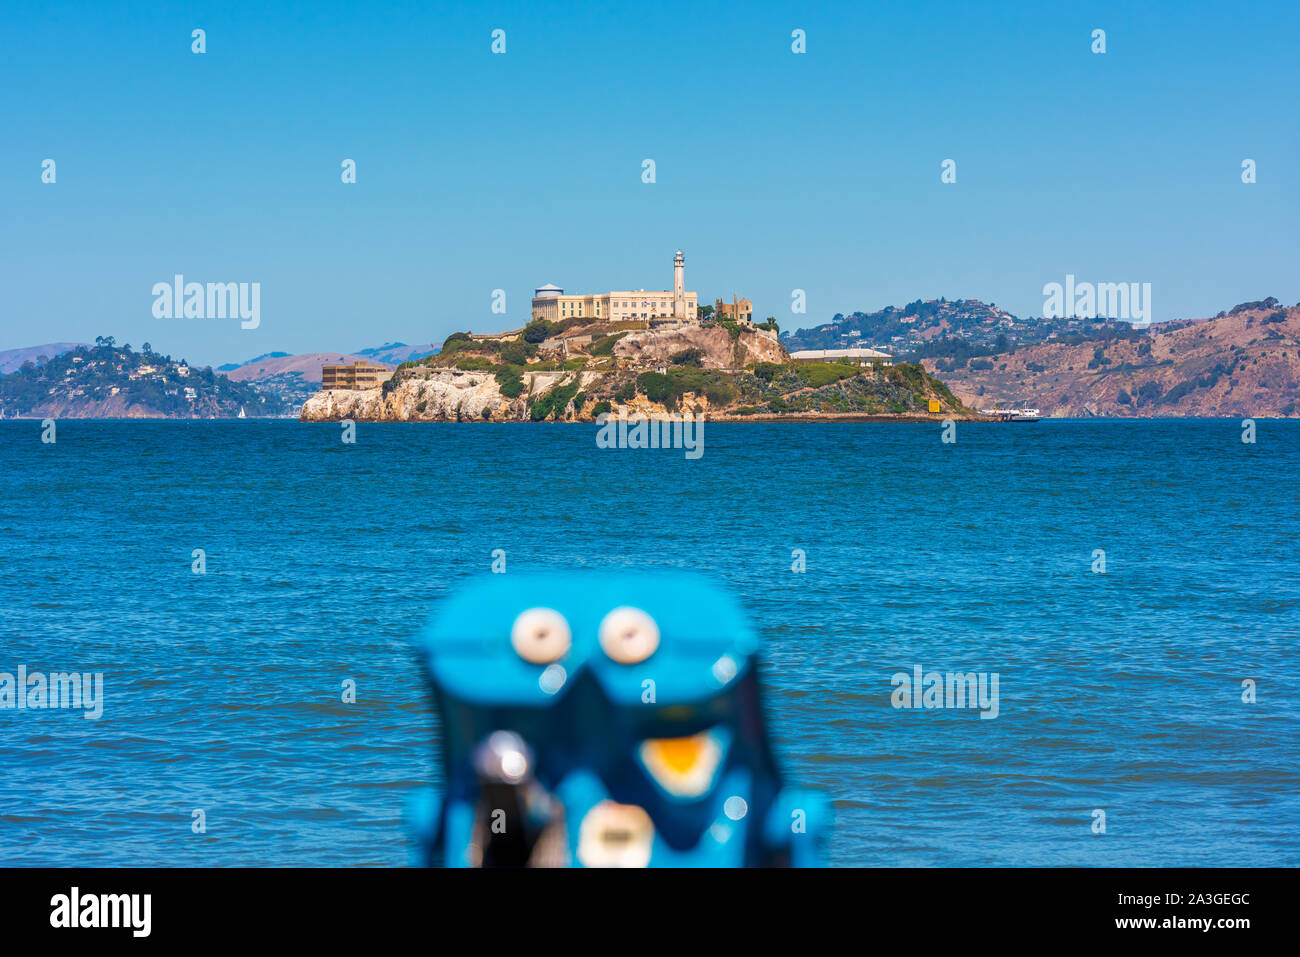 Die Insel Alcatraz und ehemalige Gefängnis in der Bucht von San Francisco, Kalifornien, USA. Unscharf Fernglas im Vordergrund. Stockfoto